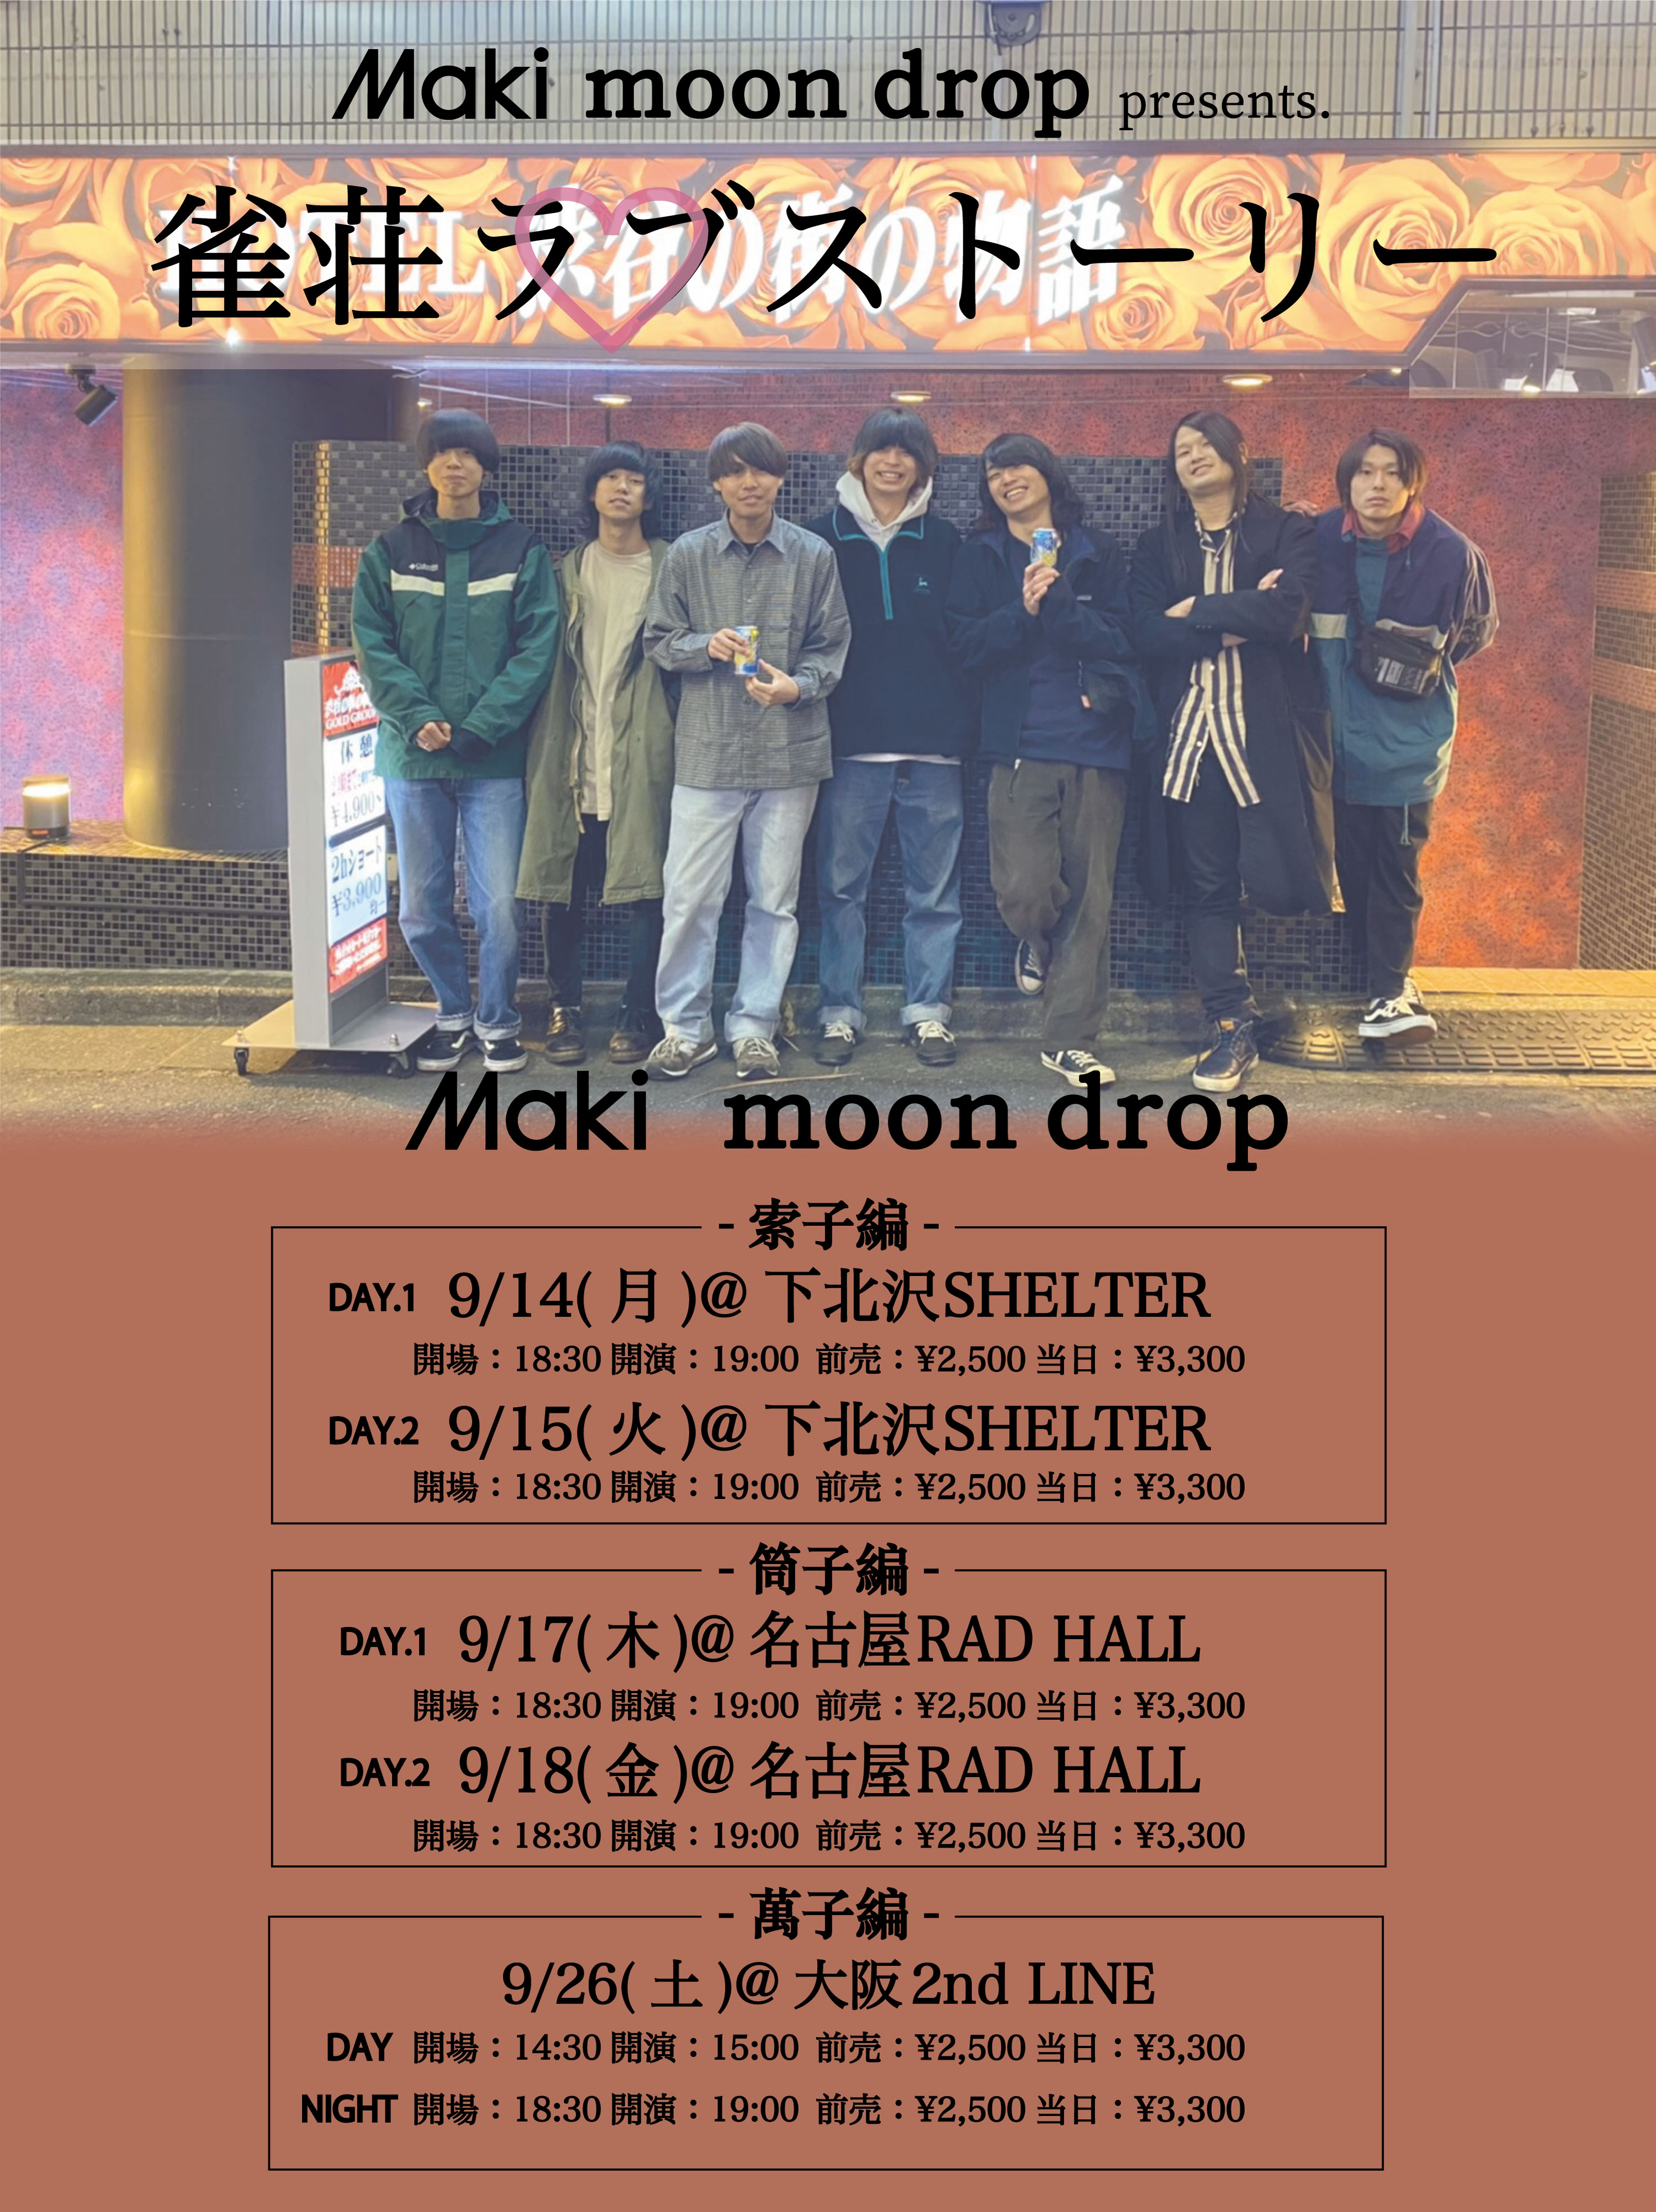 Maki moon drop presents. 雀荘ラブストーリー